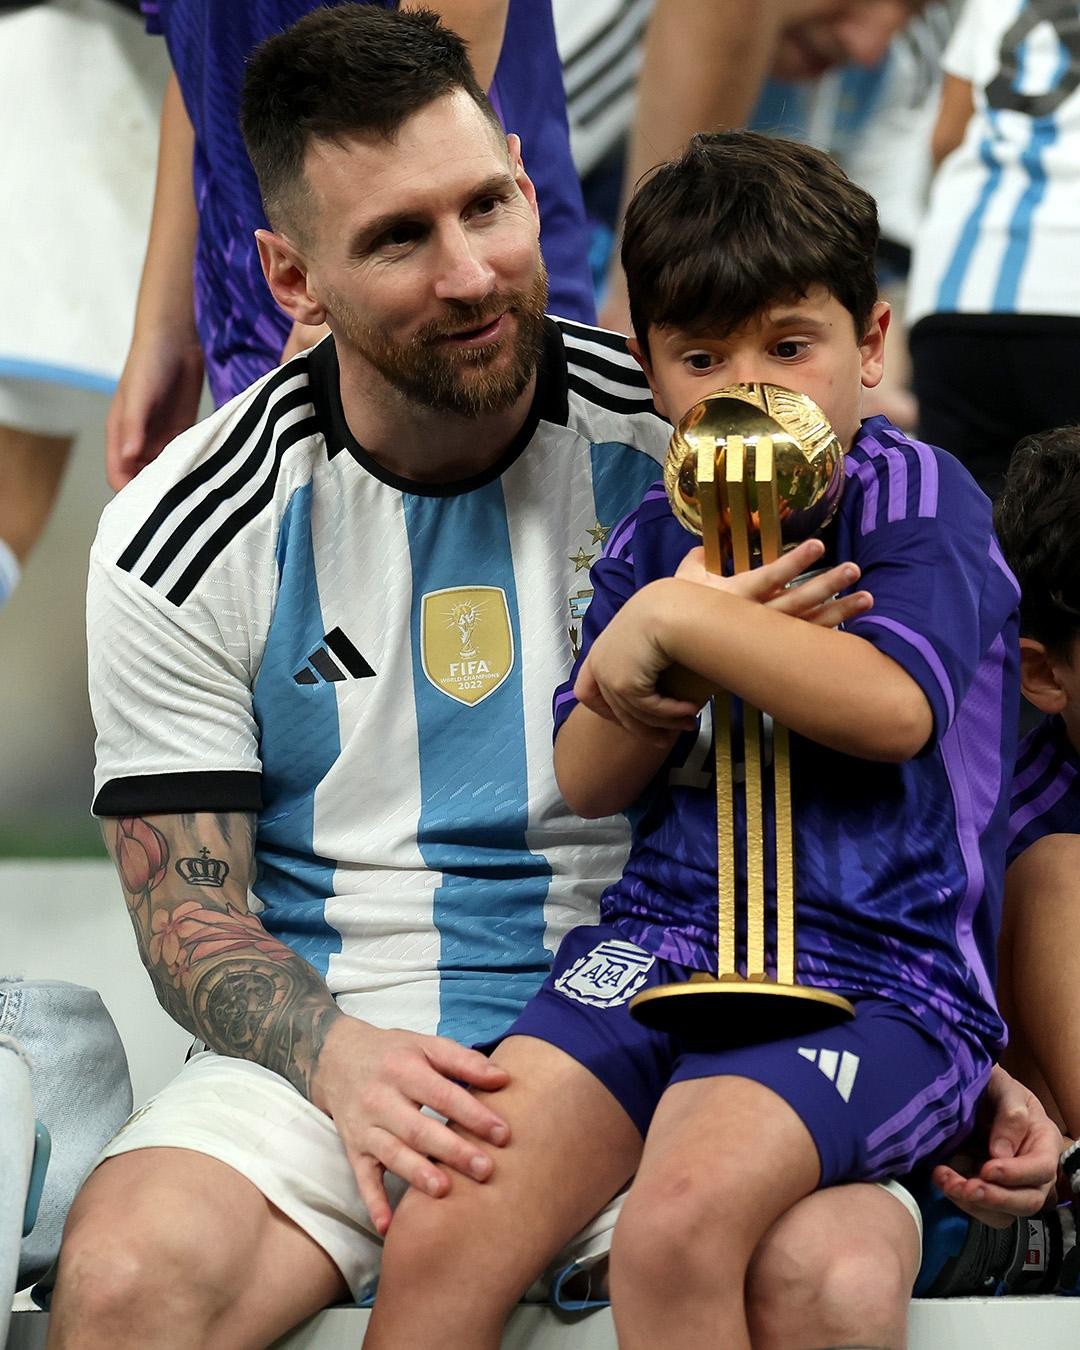 Con trai của Messi đã được các tài tử và ngôi sao bóng đá theo đuổi từ khi anh còn rất nhỏ. Và giờ đây, bạn có thể ngắm nhìn những khoảnh khắc đáng yêu của Mesii và con trai trong những bức ảnh đầy tình cảm.